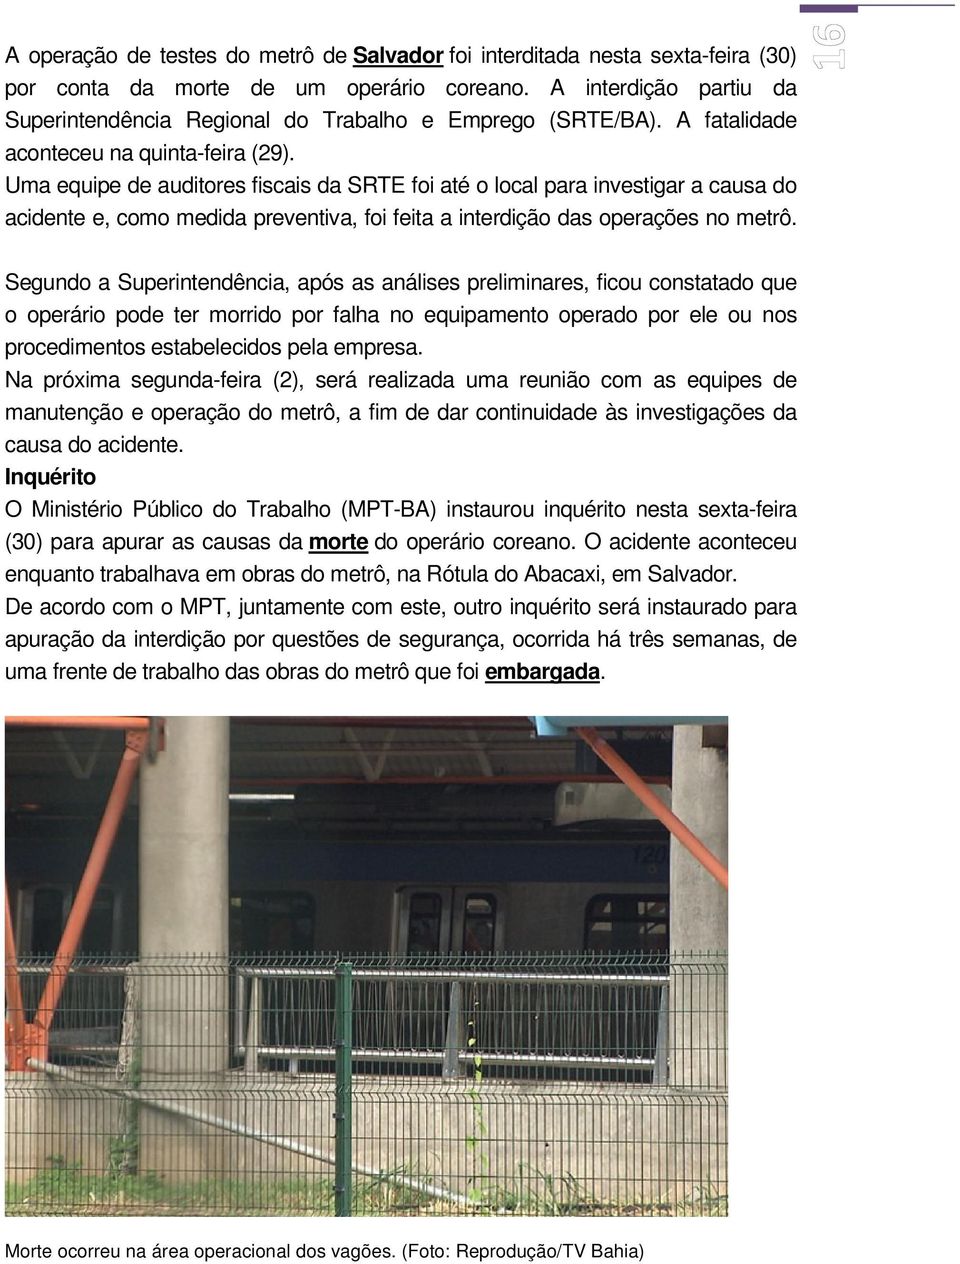 Uma equipe de auditores fiscais da SRTE foi até o local para investigar a causa do acidente e, como medida preventiva, foi feita a interdição das operações no metrô.